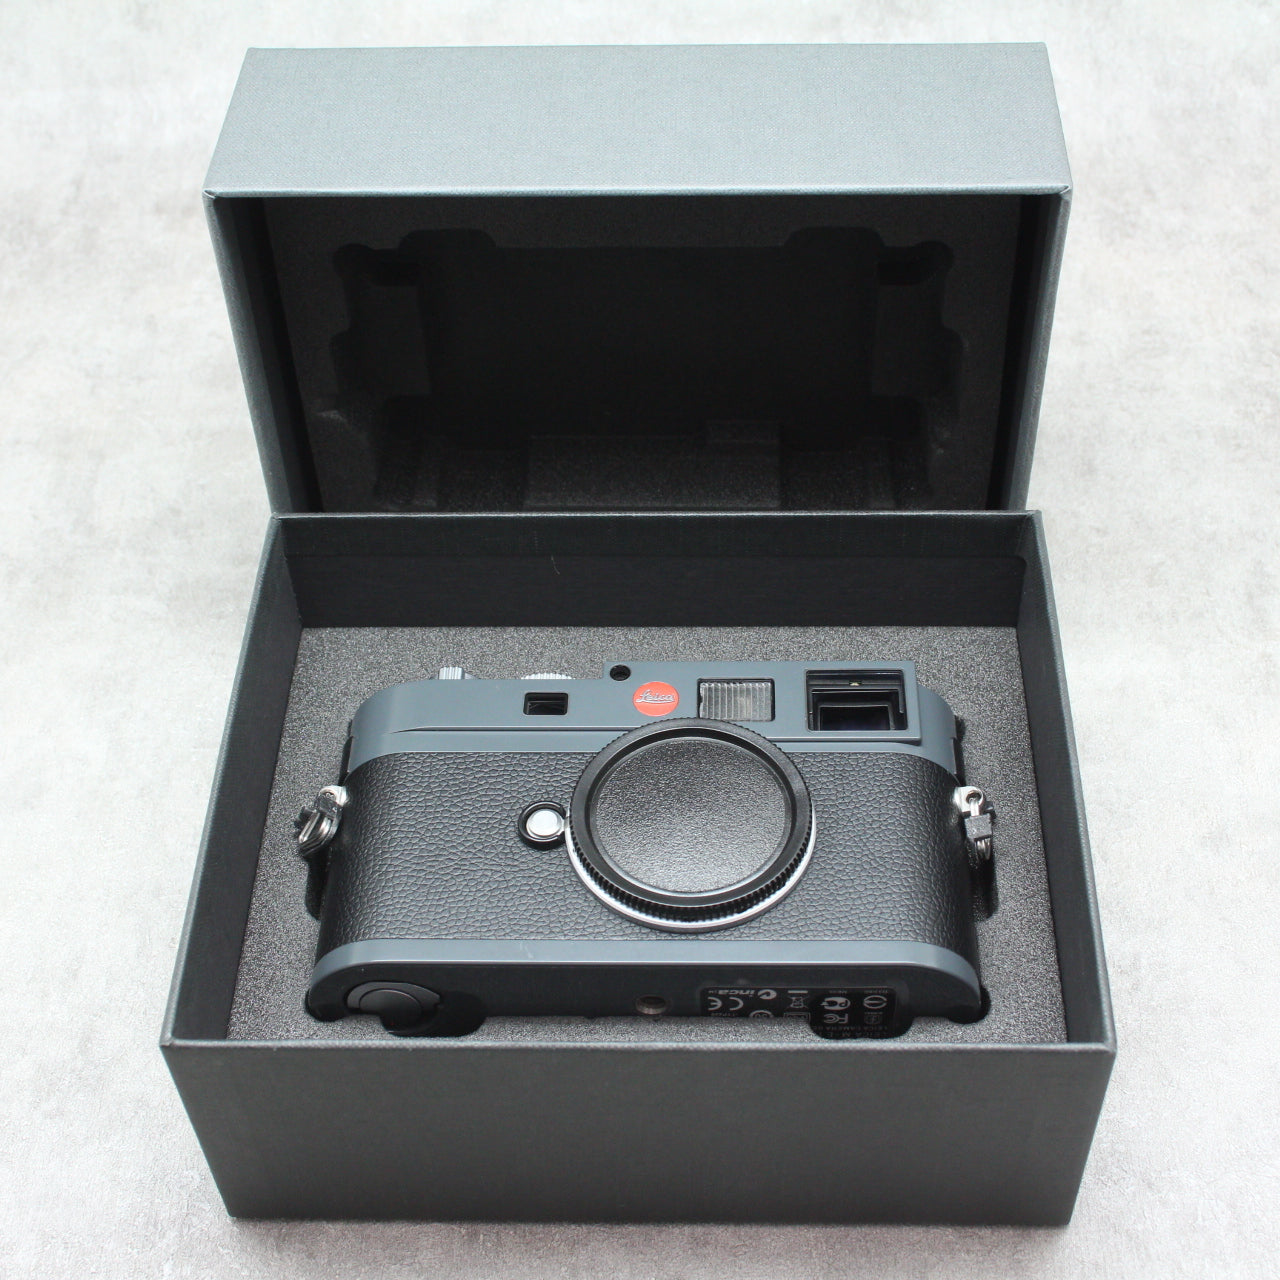 中古品 Leica M-E (Typ 220)【12月3日(土)のYouTube生配信でご紹介】